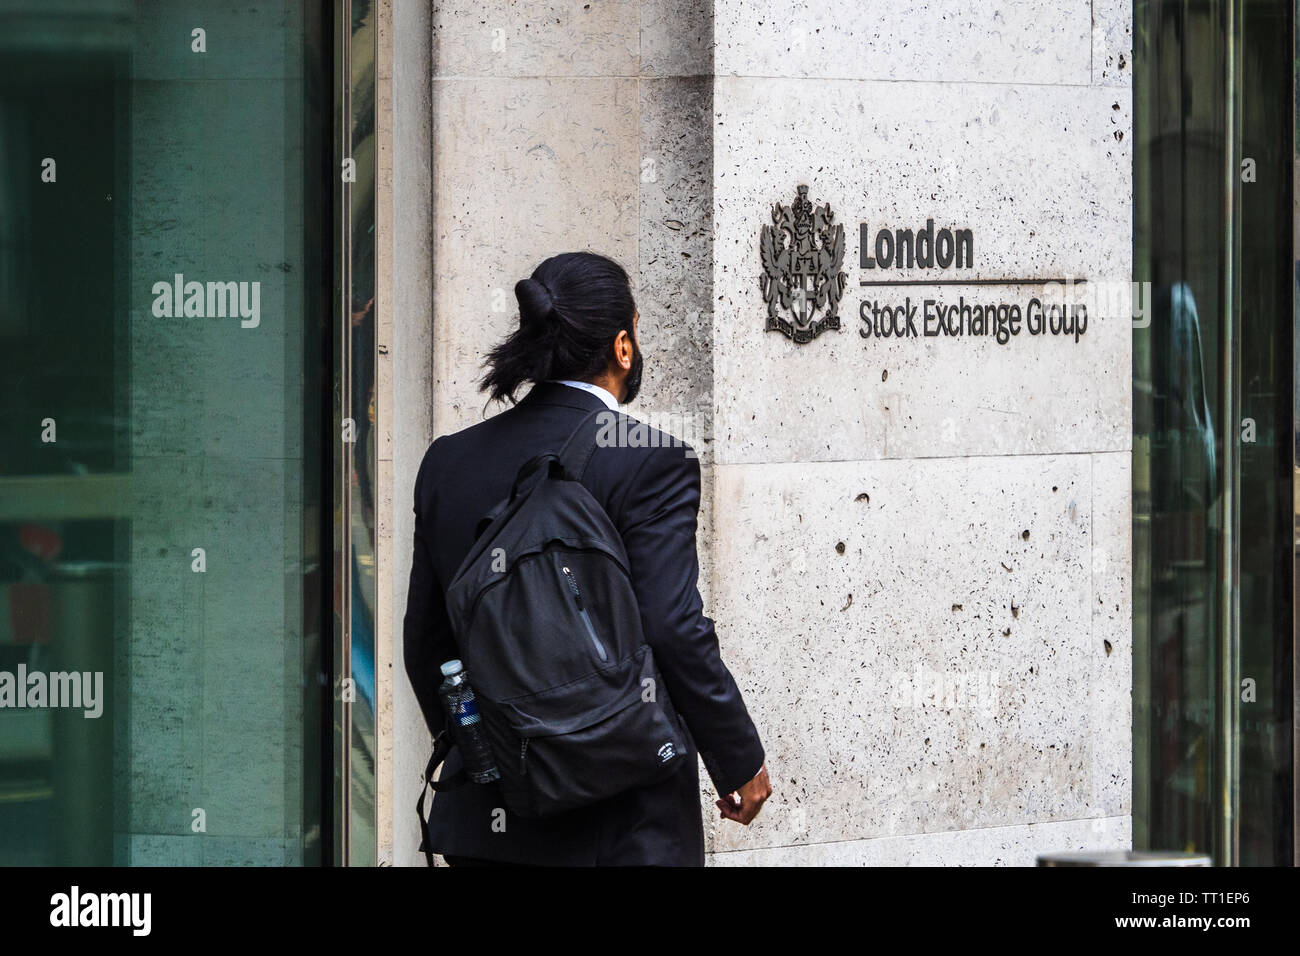 London Stock Exchange - un travailleur de la ville passe le London Stock Exchange building à 10 rangs Paternoster, dans la ville de London, Financial District Banque D'Images